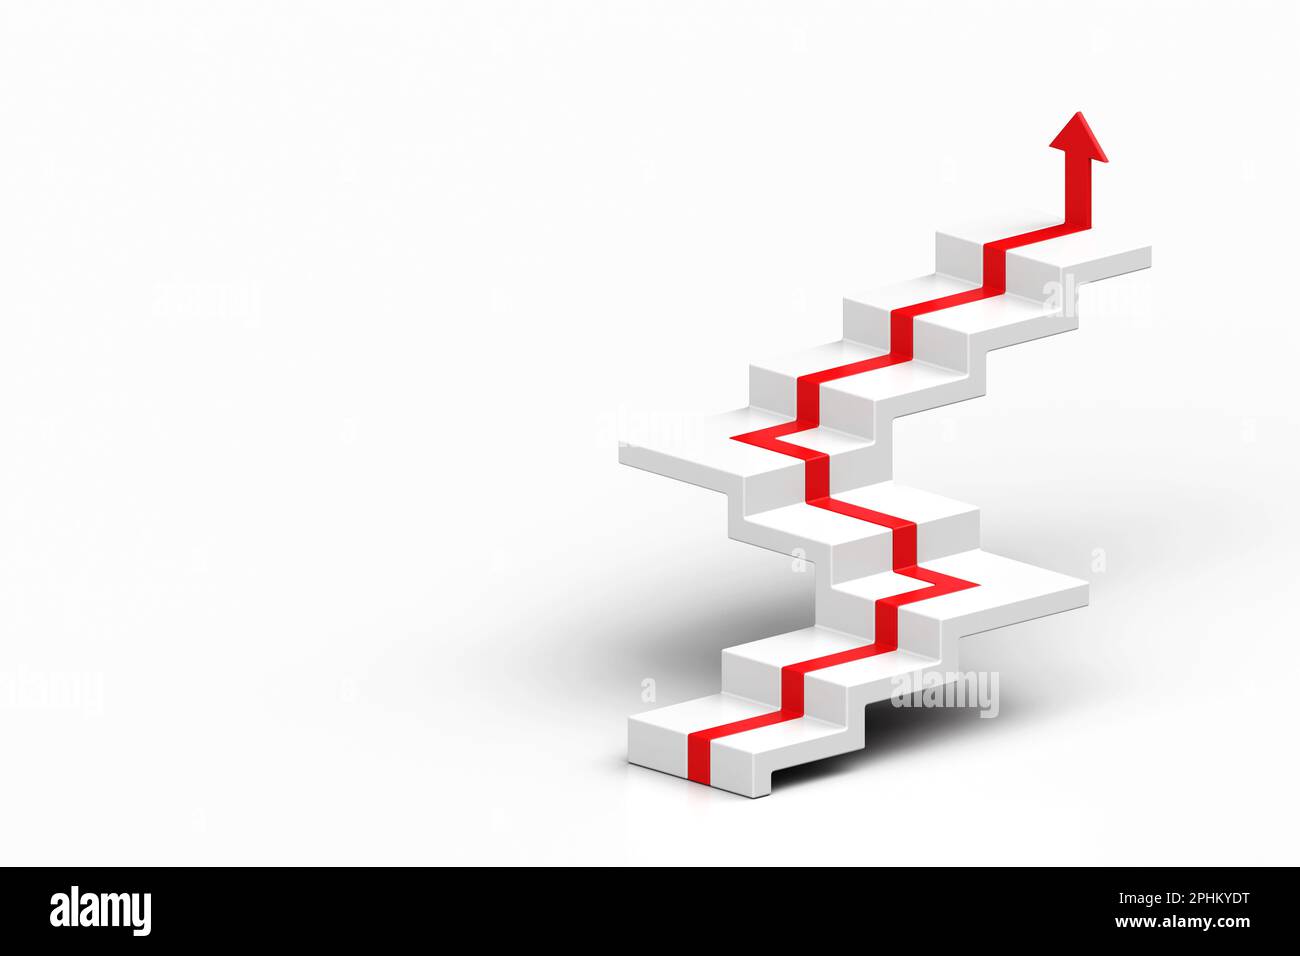 Freccia rossa che segue le scale di crescita su sfondo bianco, 3D freccia che sale su una scala, 3D scale con freccia che sale, 3D rendering Foto Stock